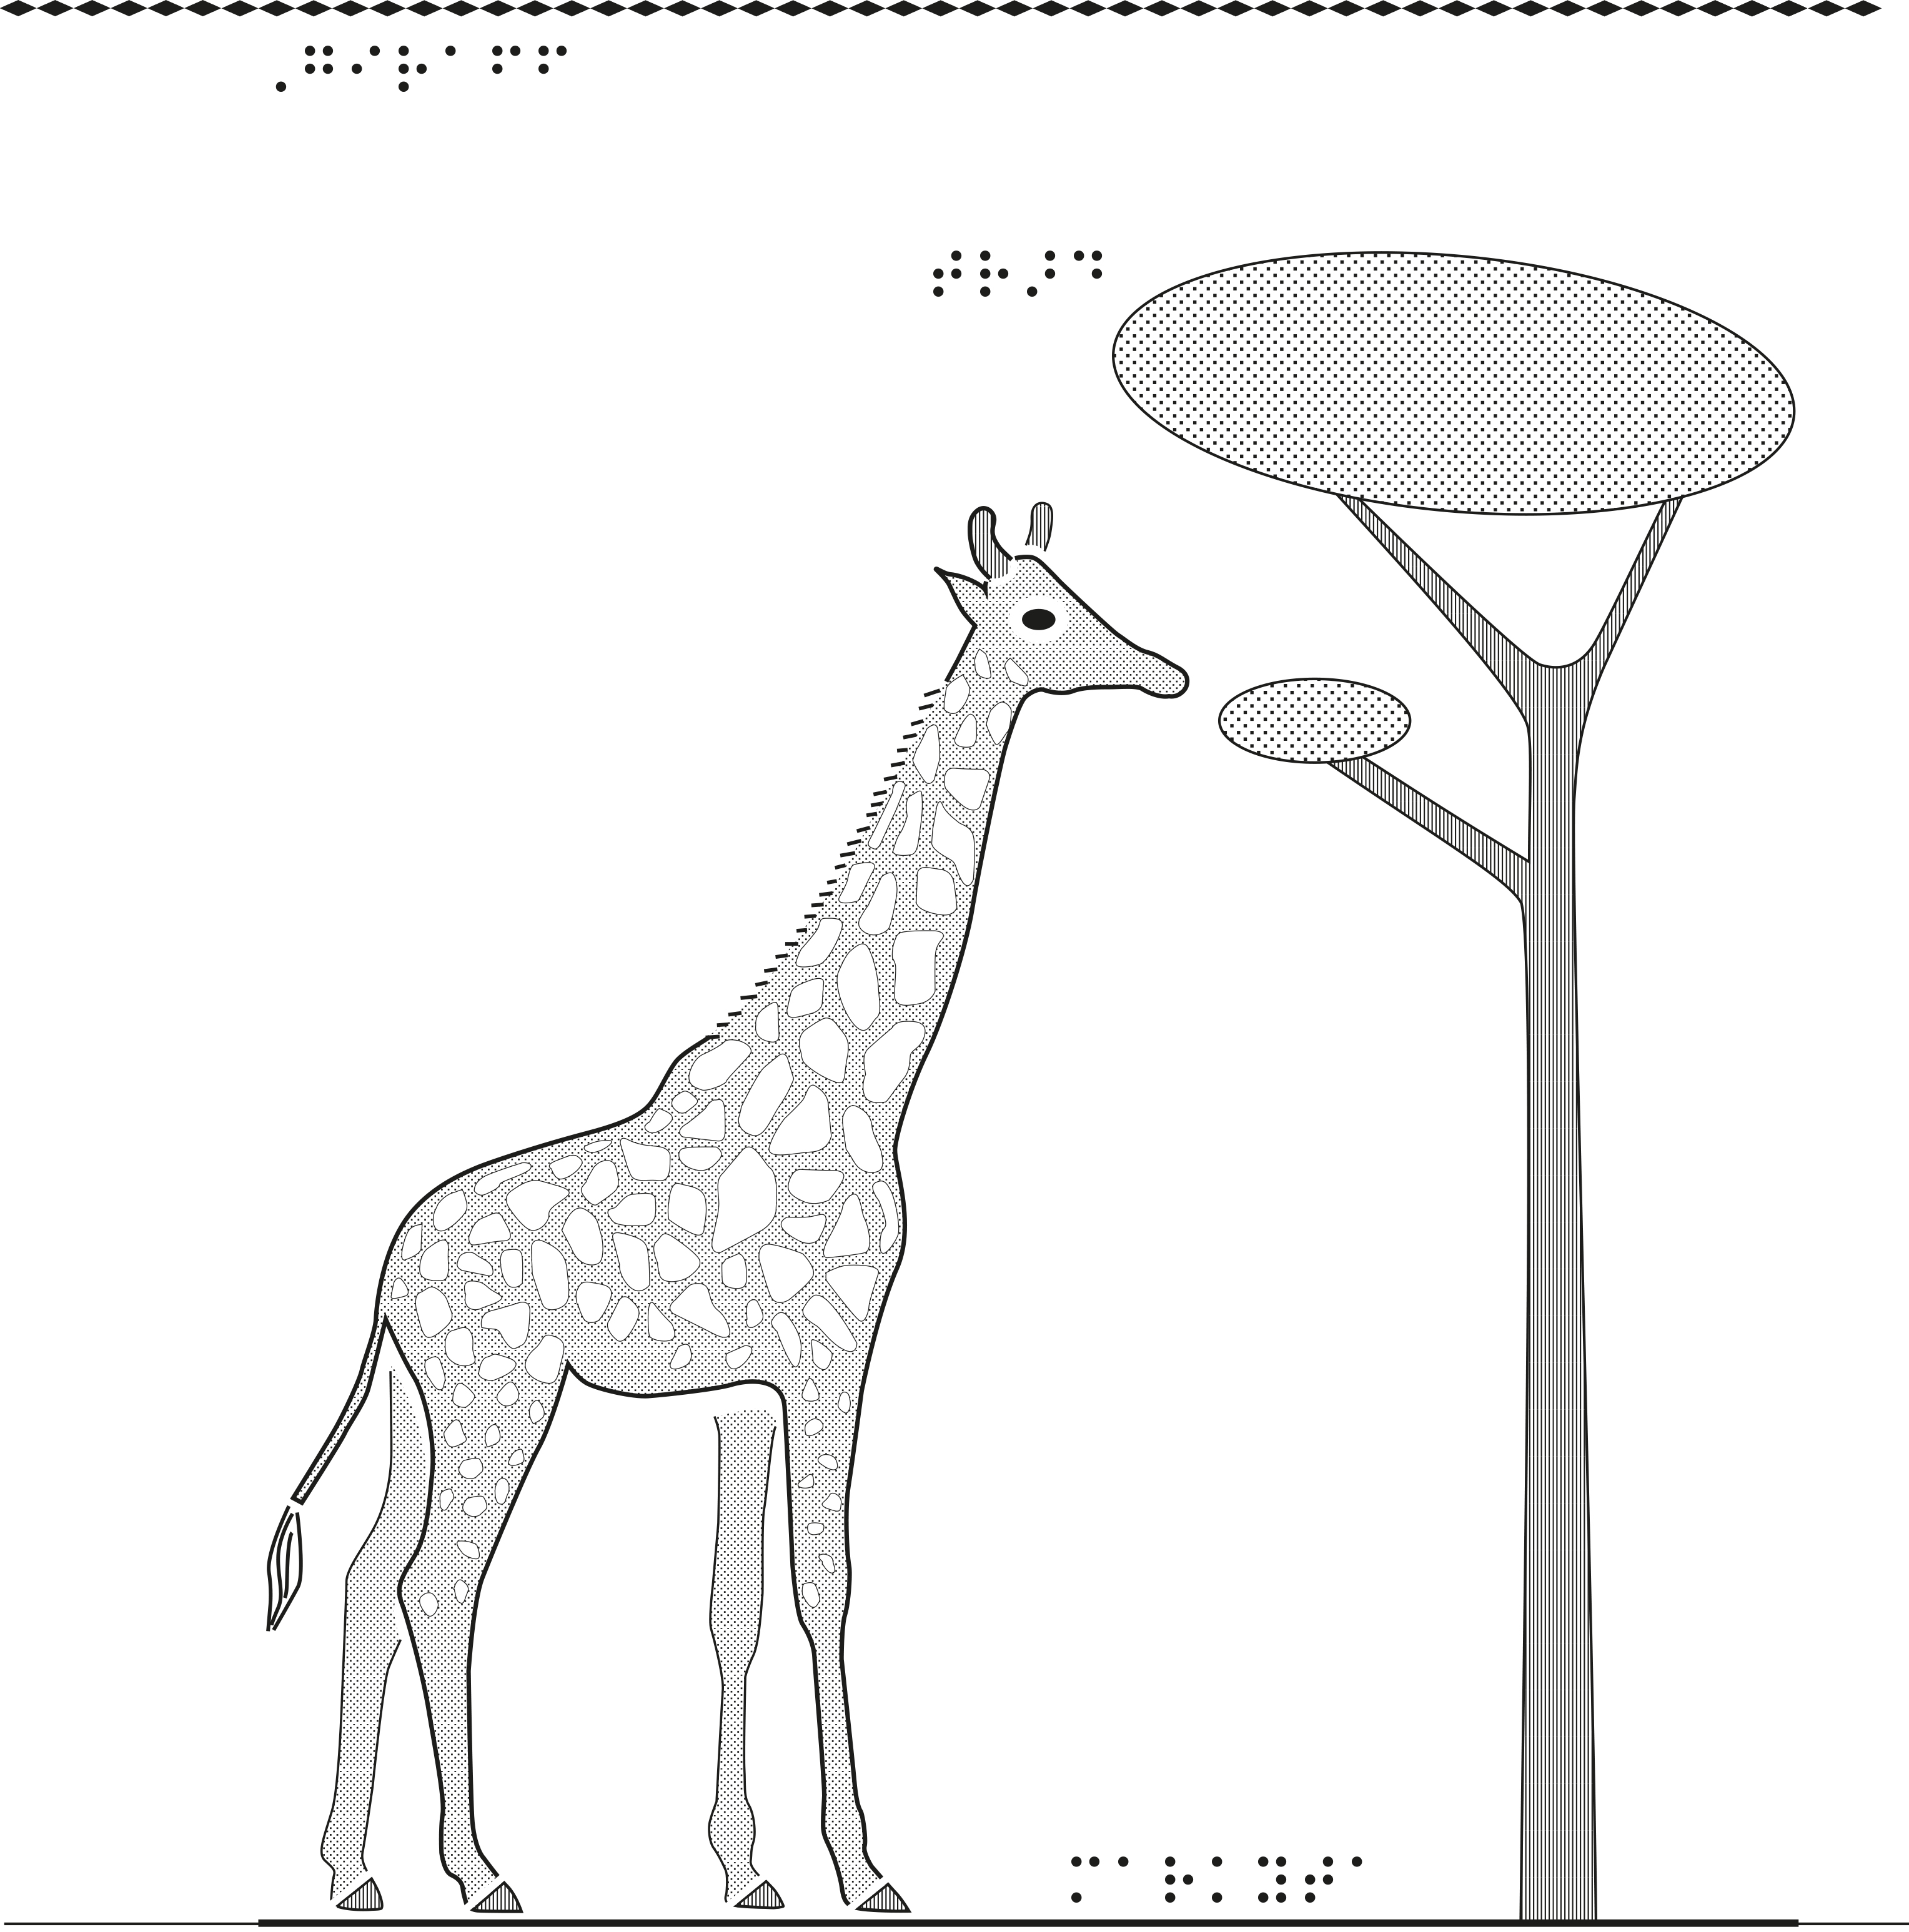 Taktil bild på an giraff.